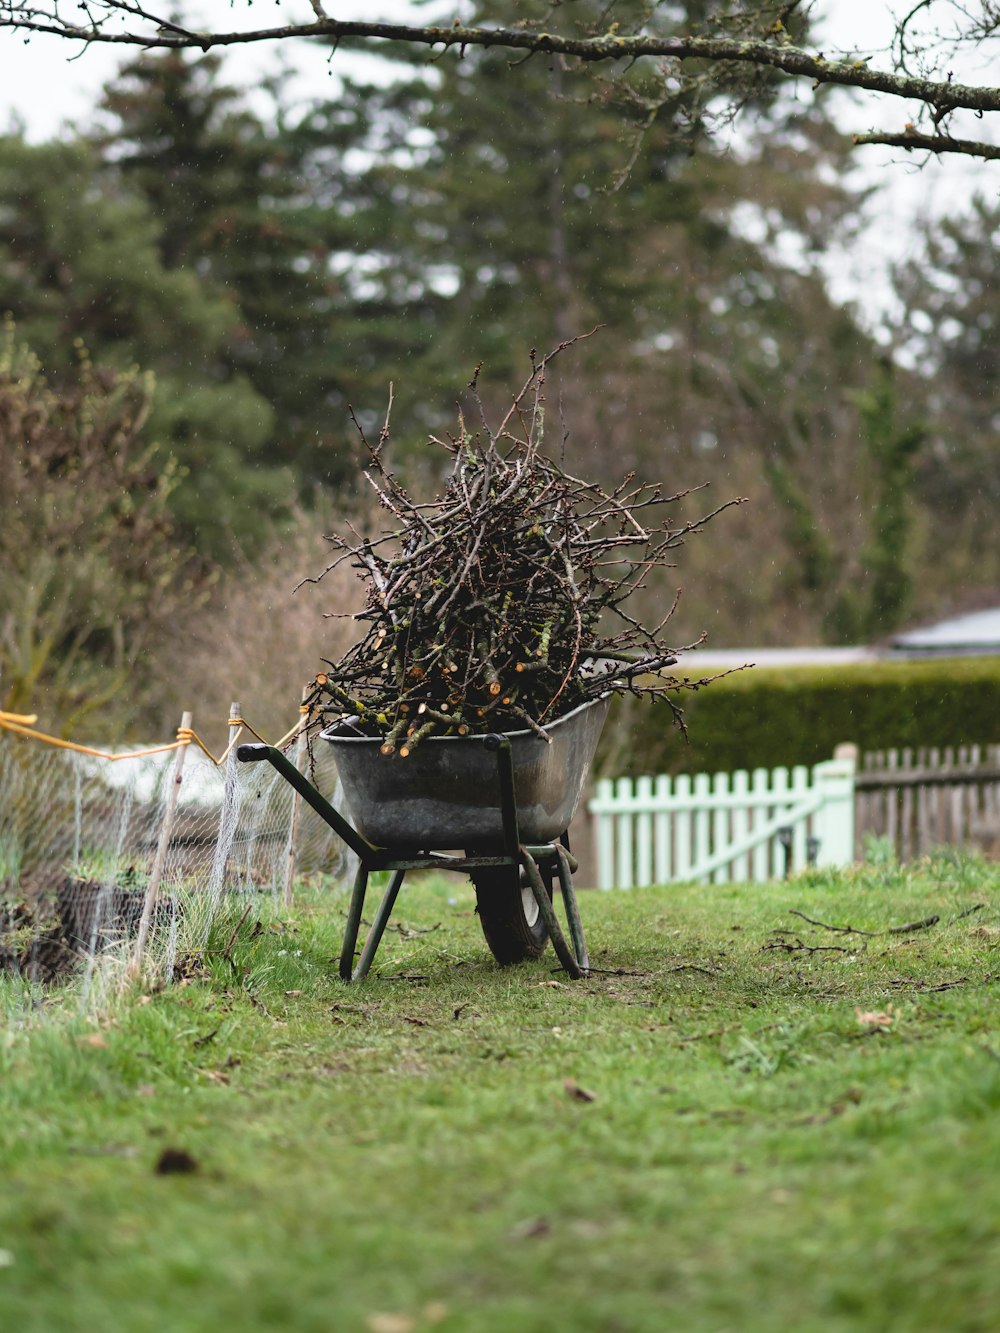 a wheelbarrow full of twigs in a yard